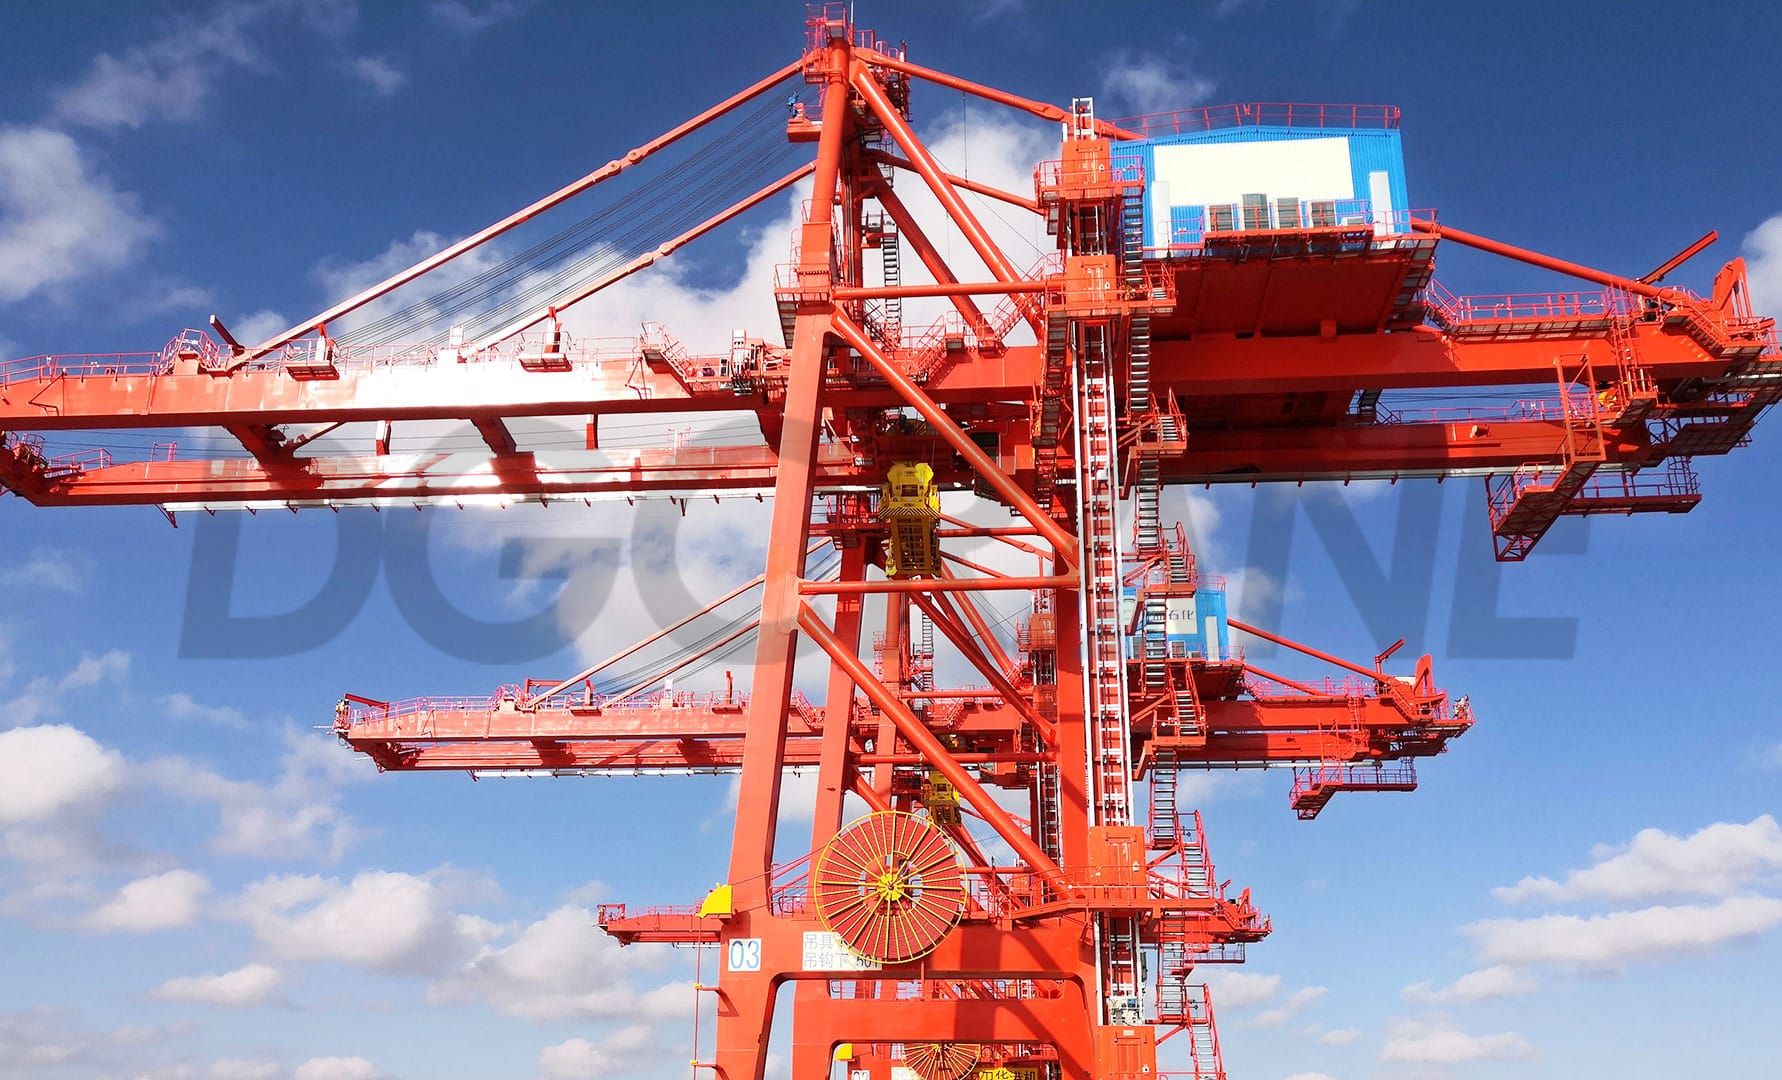 Zhejiang Petrochemical Ship to shore crane Project